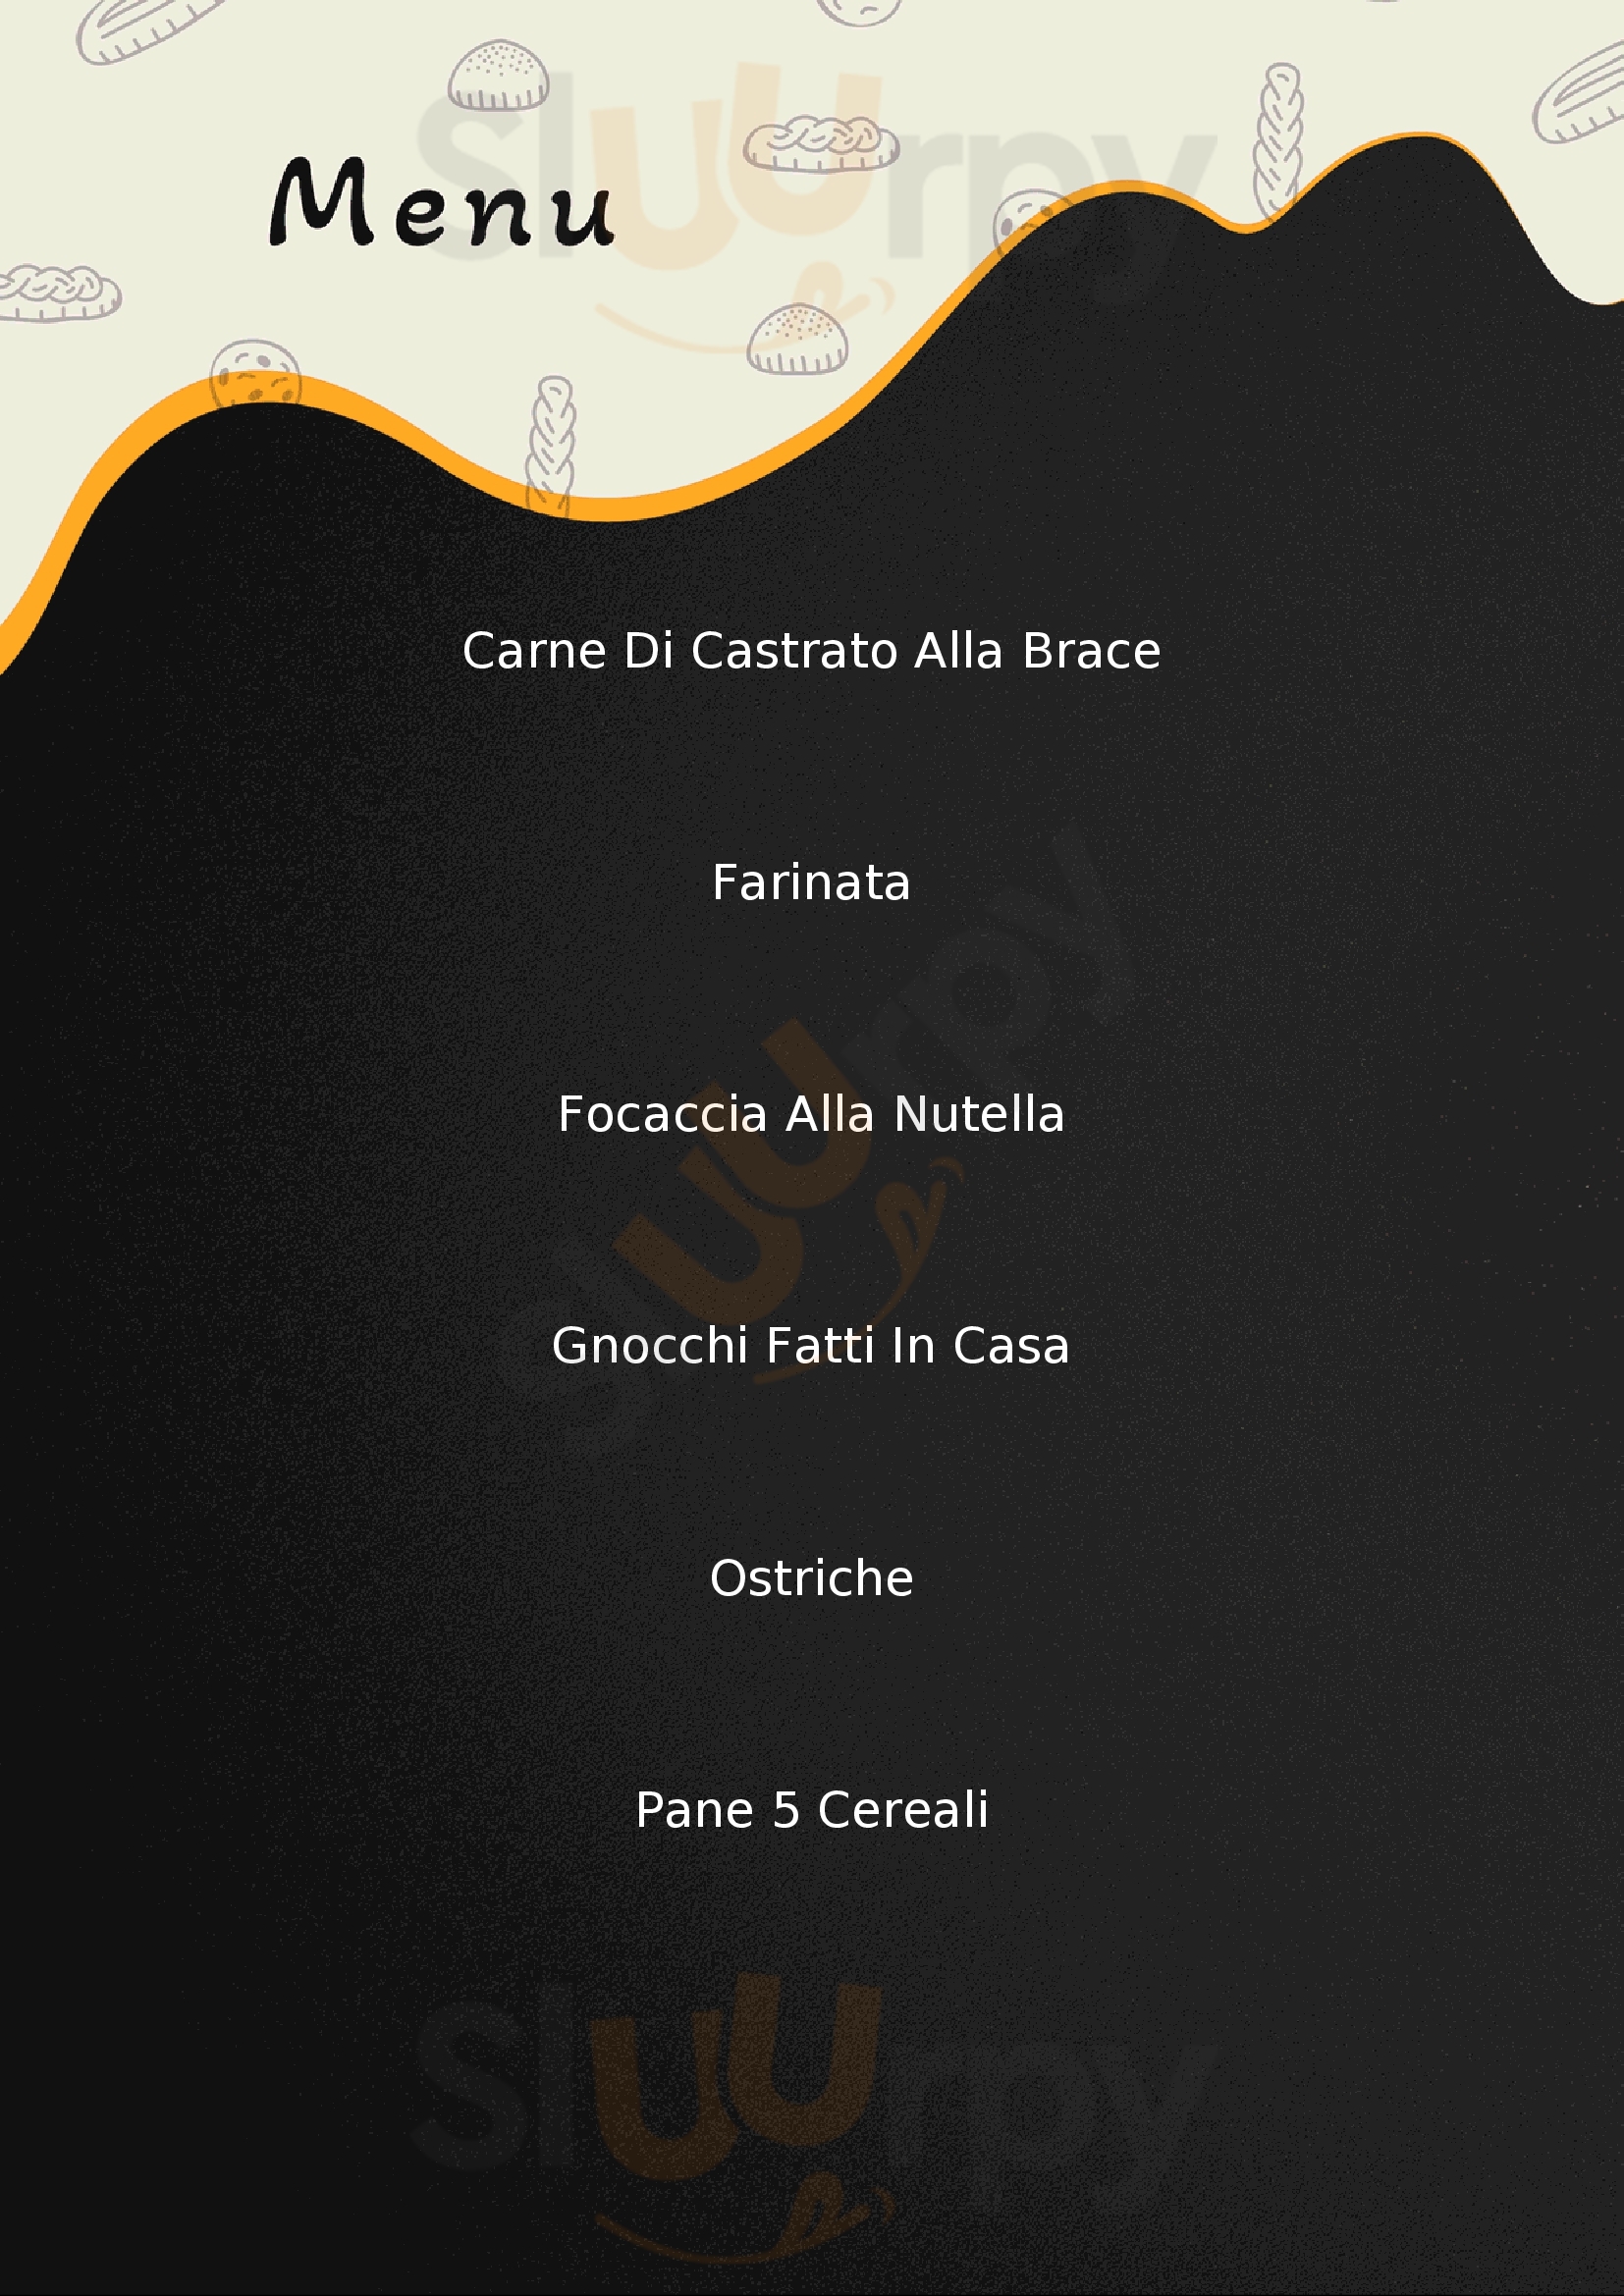 L'Ultima Follia 2.0 Rocca Canavese menù 1 pagina